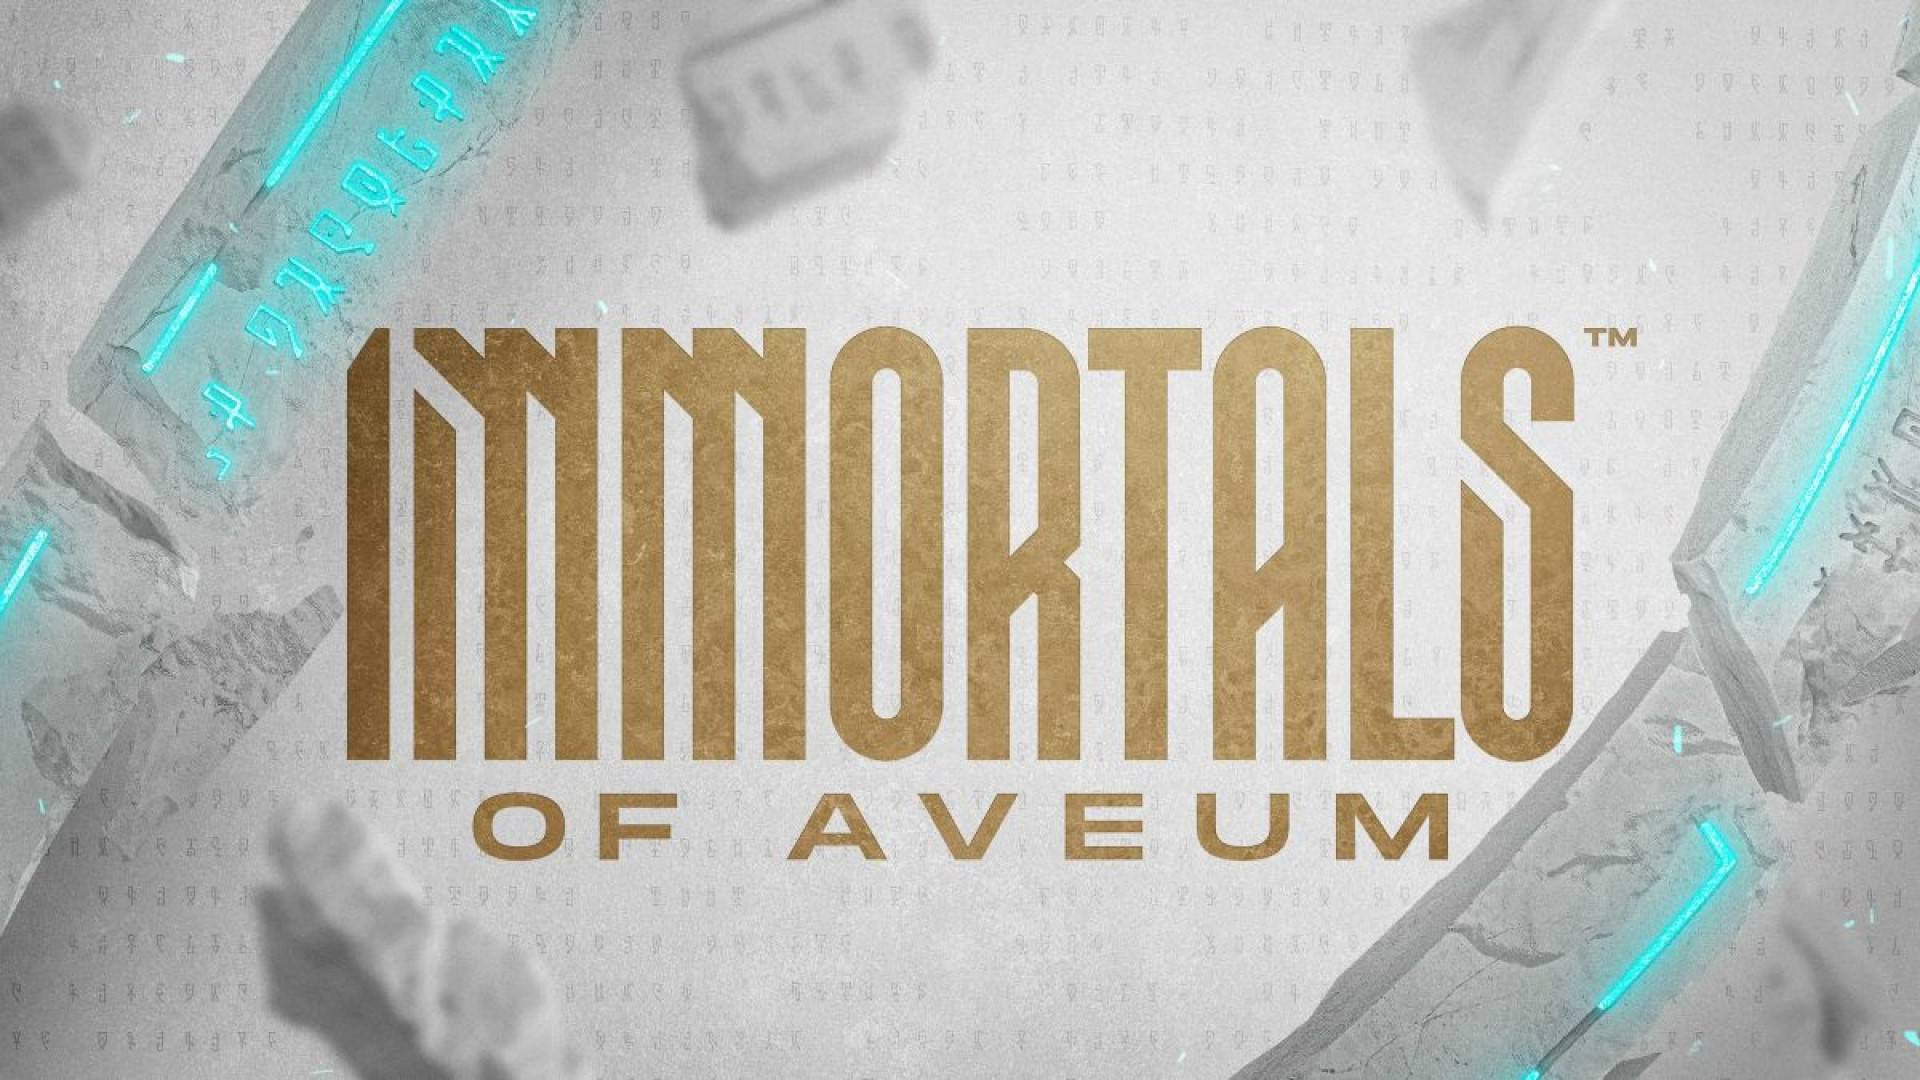 حجم نسخه پلی استیشن 5 بازی Immortals of Aveum